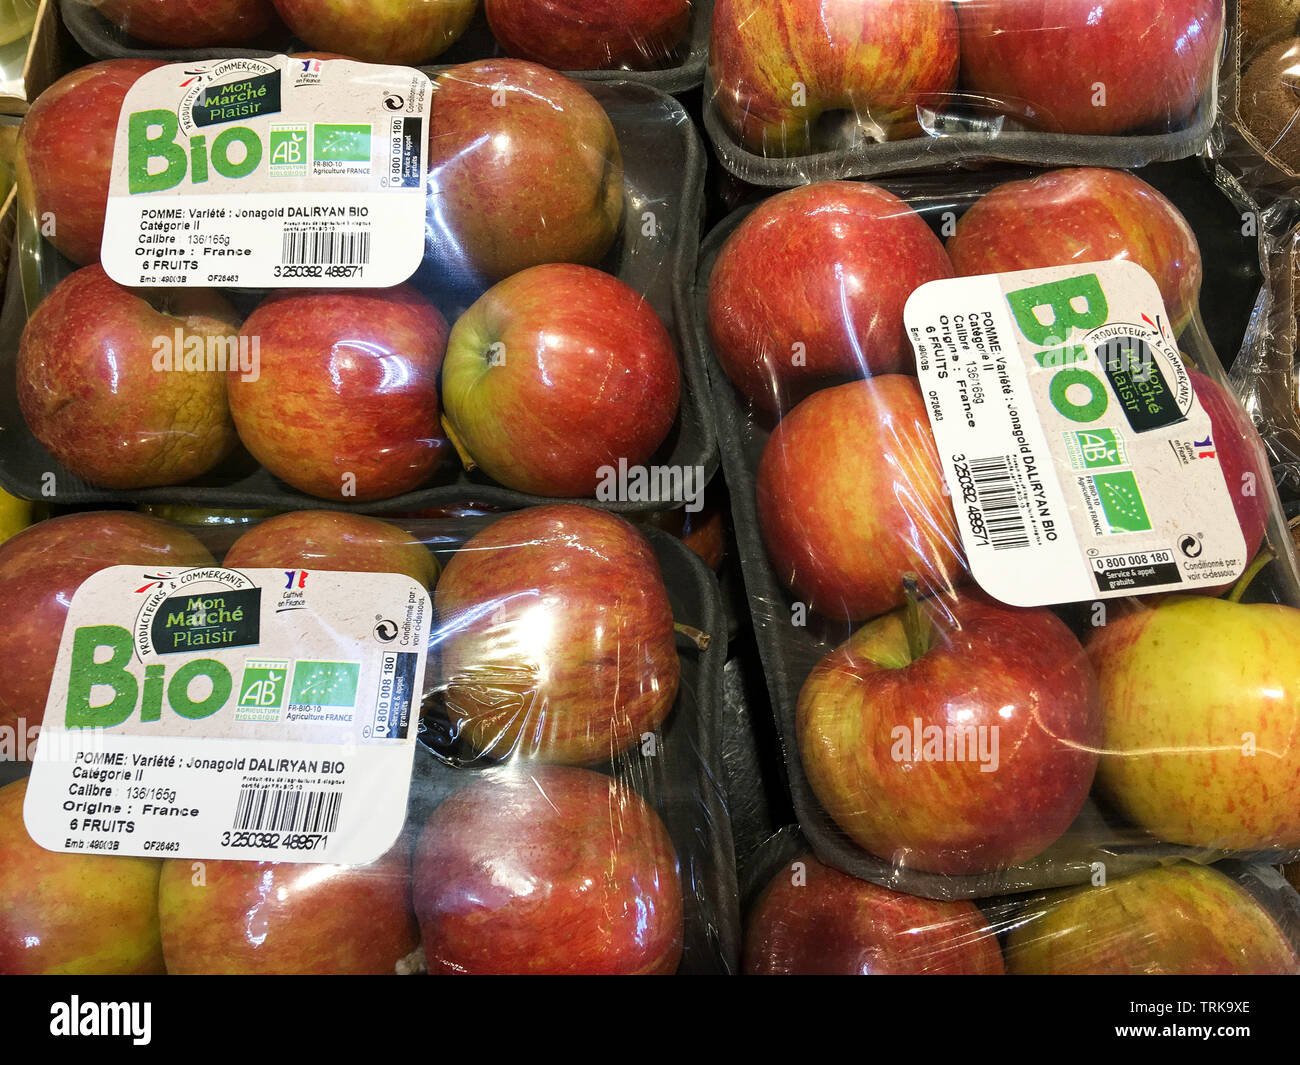 Organic apples packaged in plastic blister packs, France Stock Photo